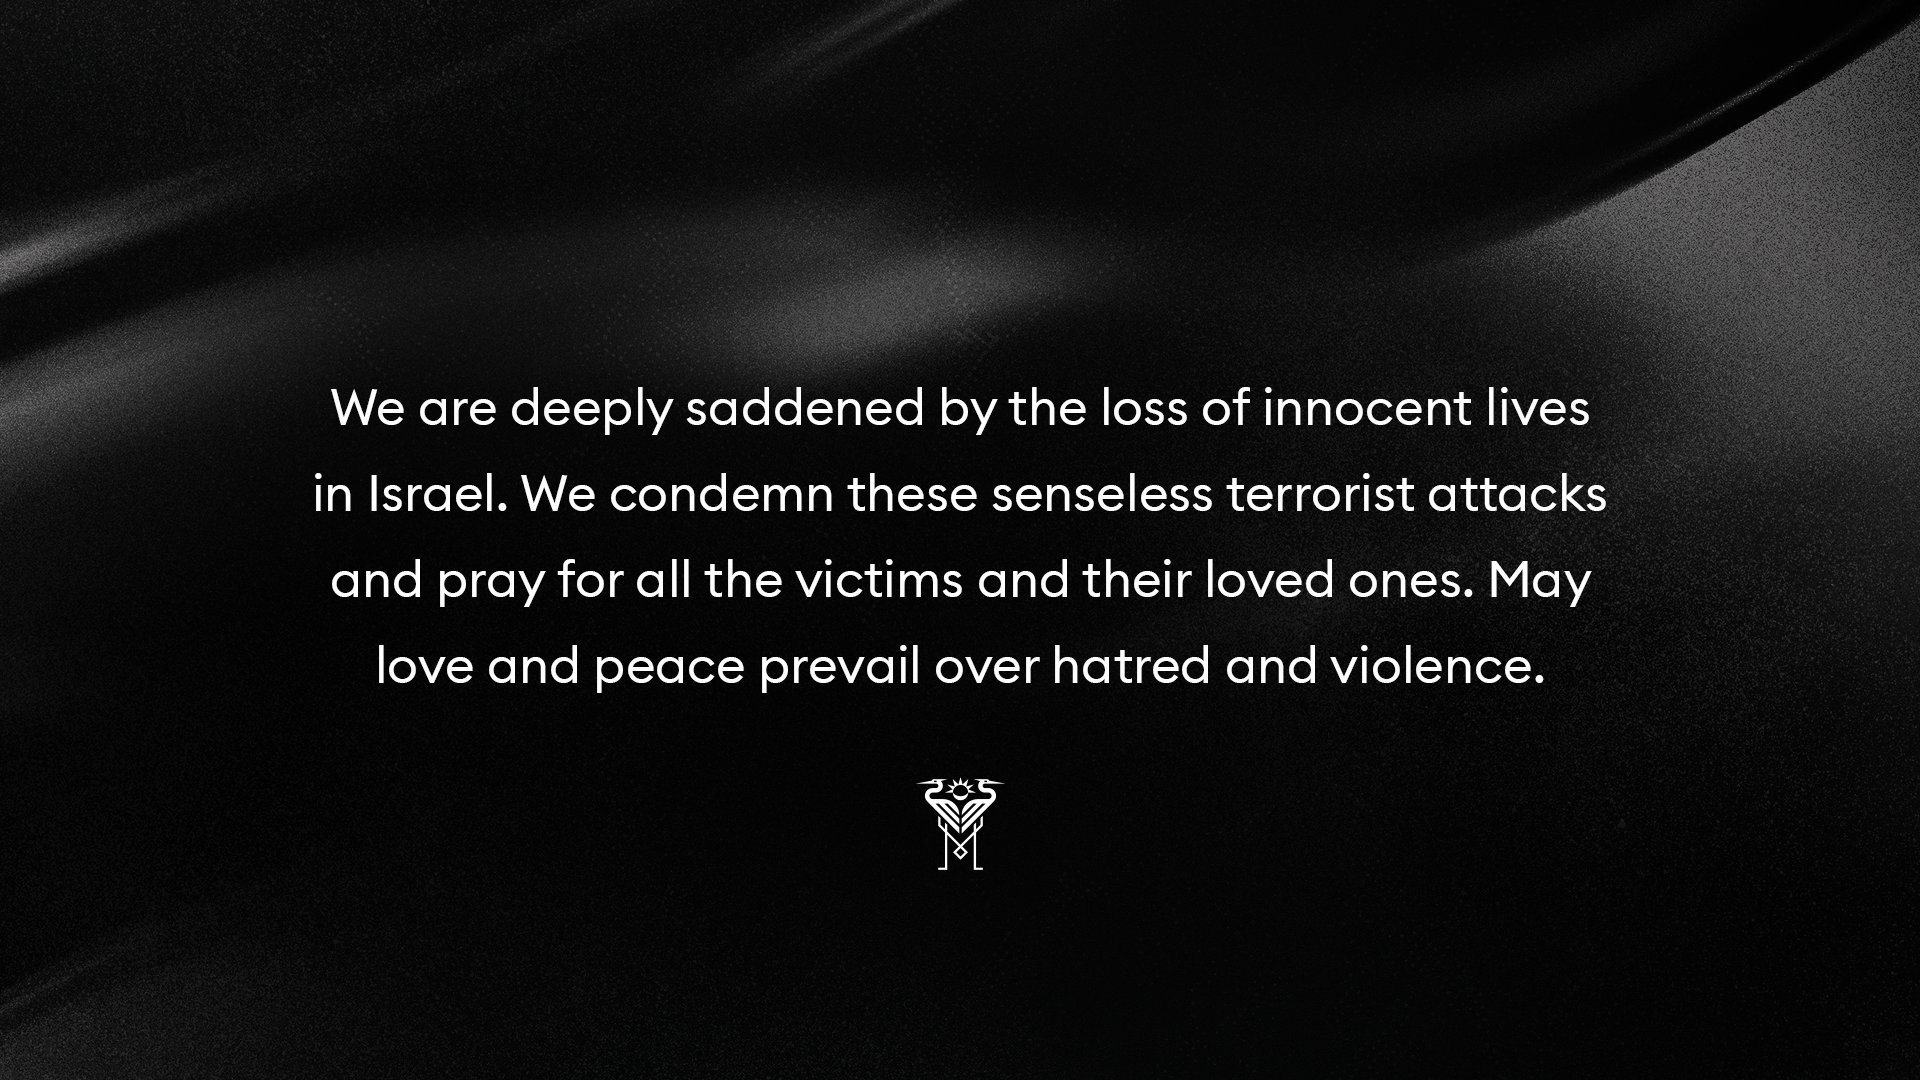 迈阿密国际声明：对以色列无辜生命的损失深感悲痛，谴责恐怖袭击